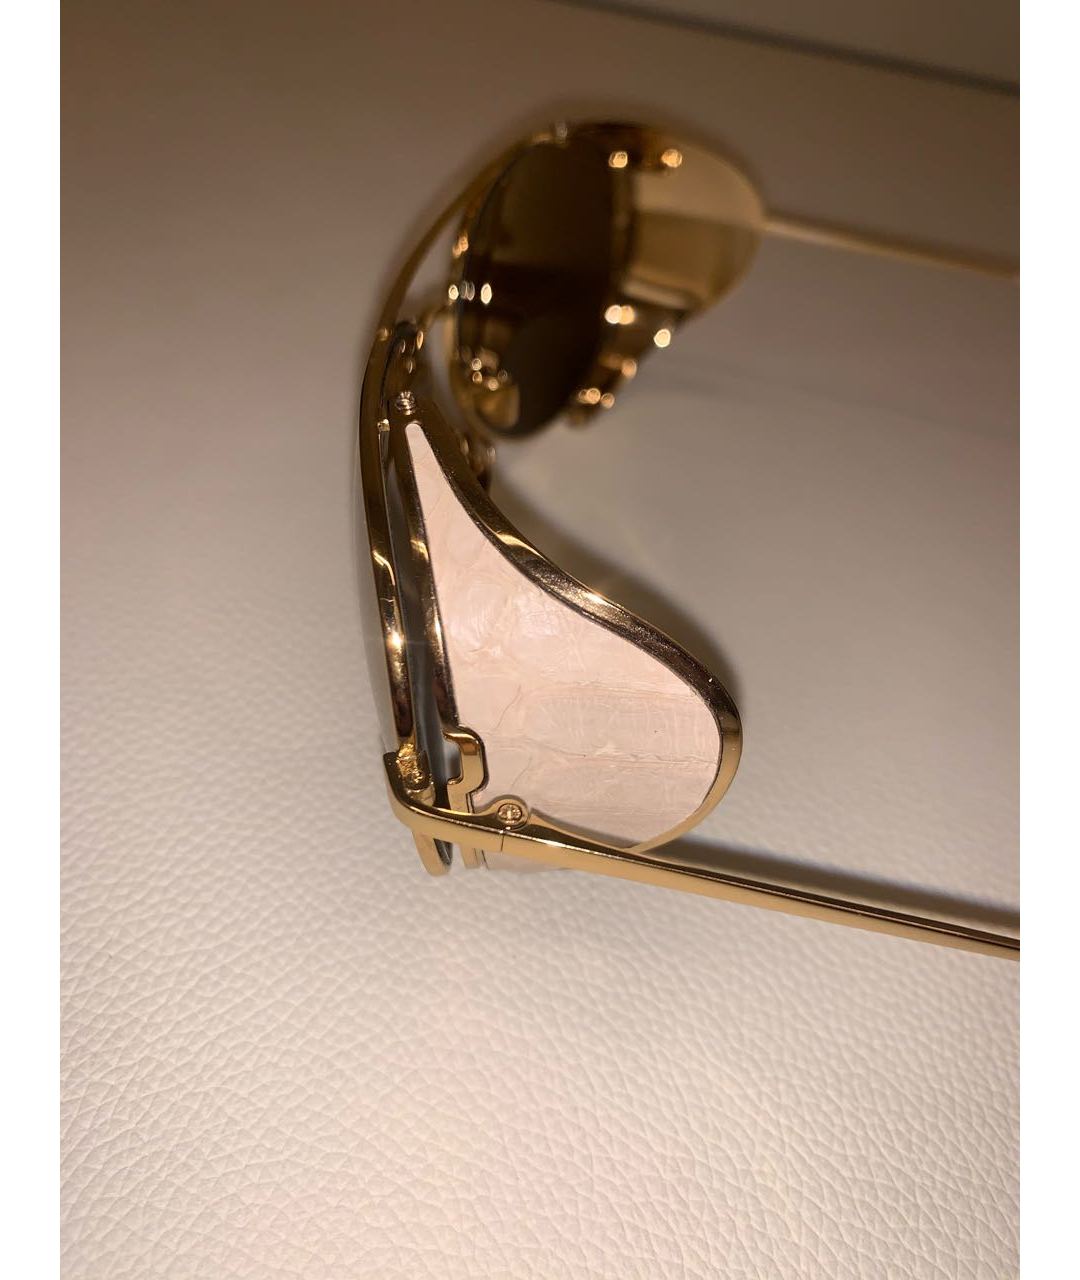 LINDA FARROW Золотые металлические солнцезащитные очки, фото 5